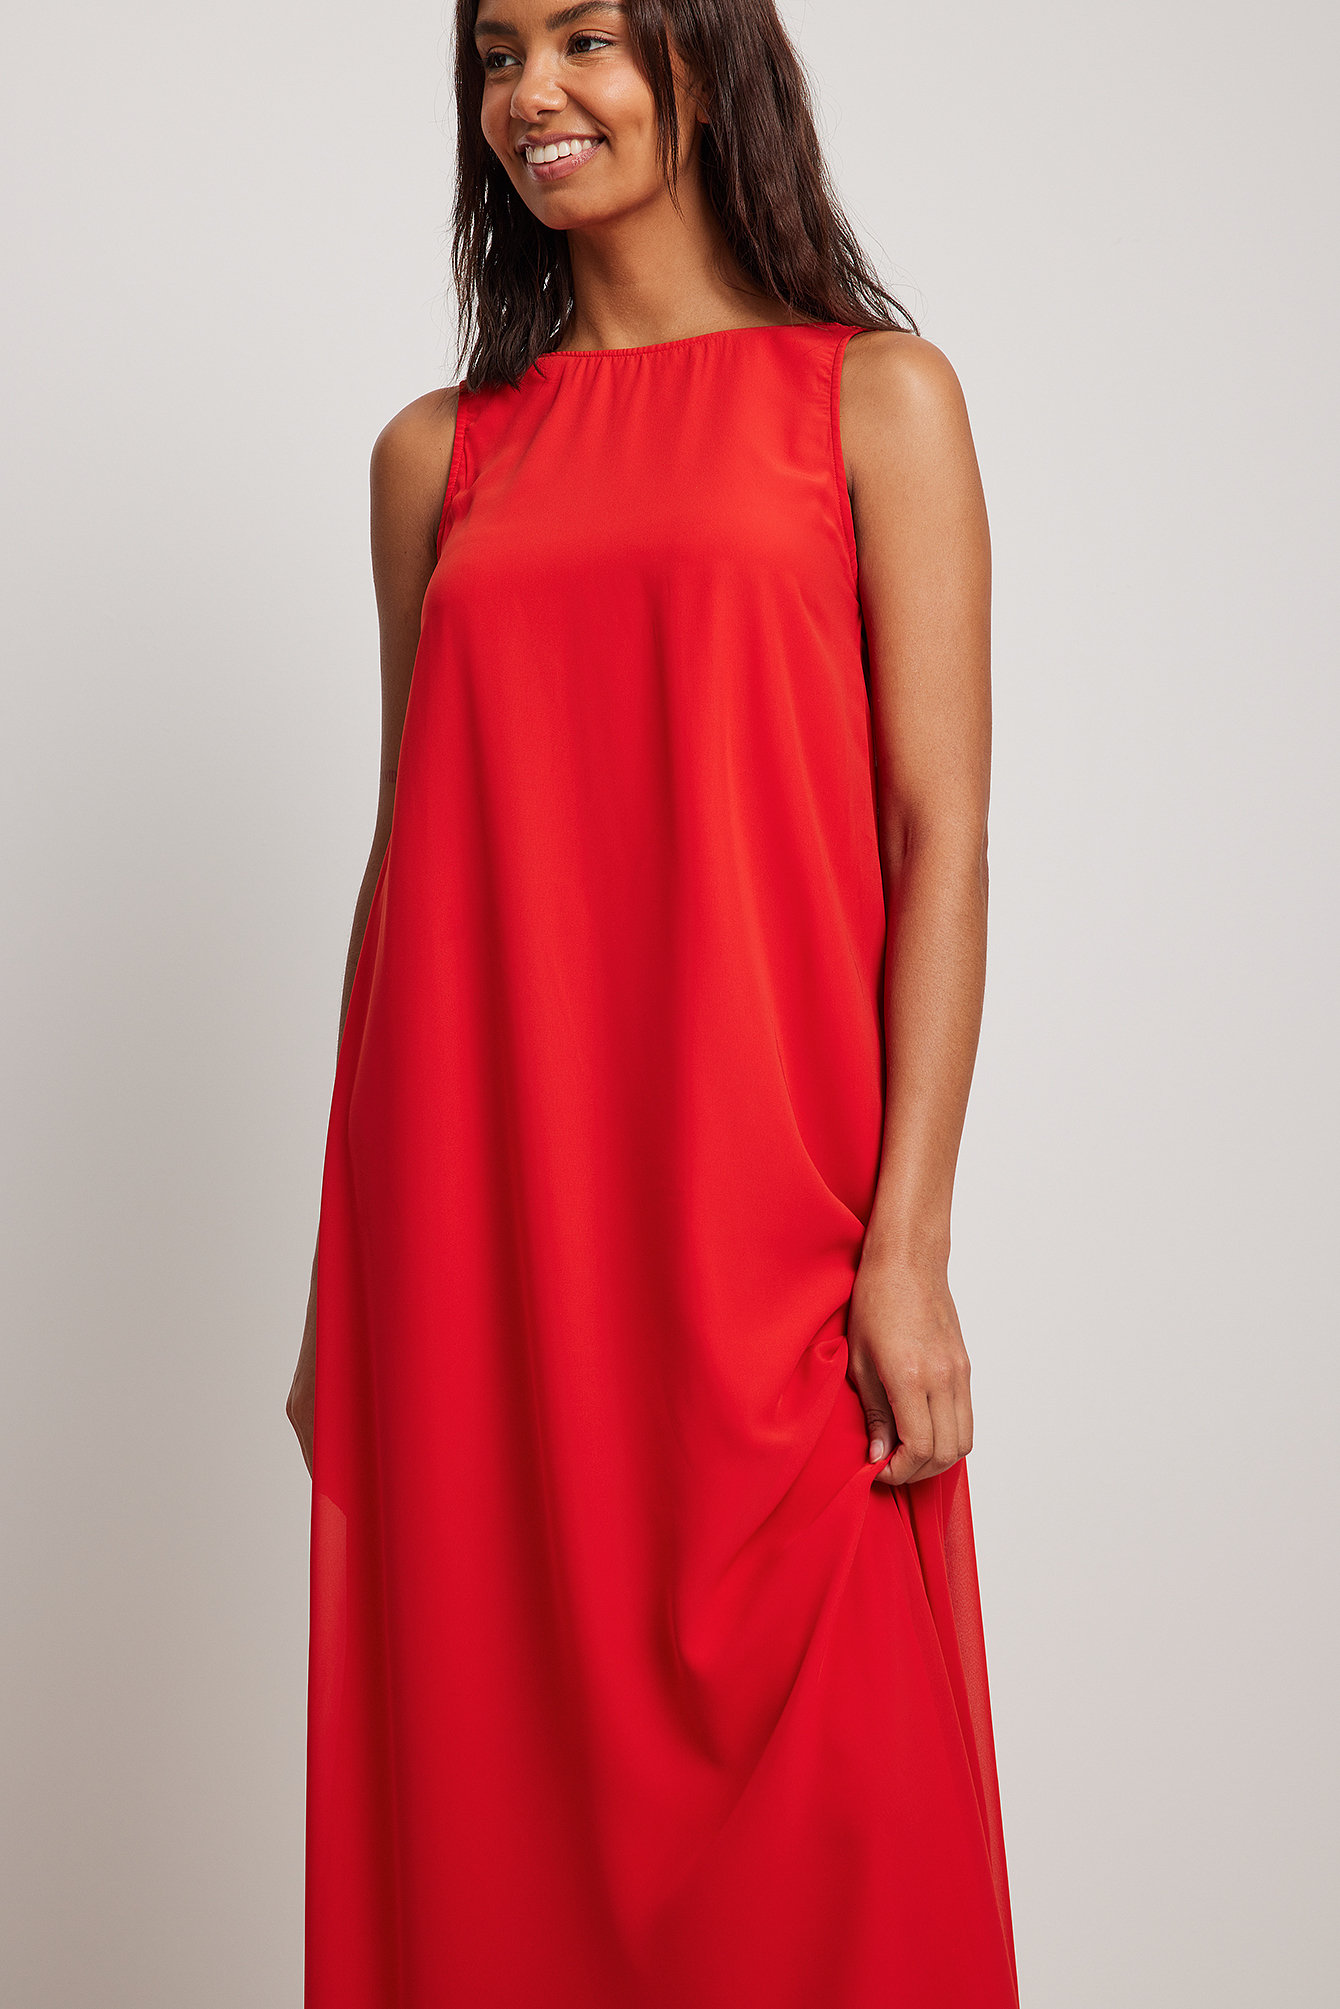 Mode Jurken Chiffon jurken Mint&berry Chiffon jurk prints met een thema Ingezette stukken van stof 